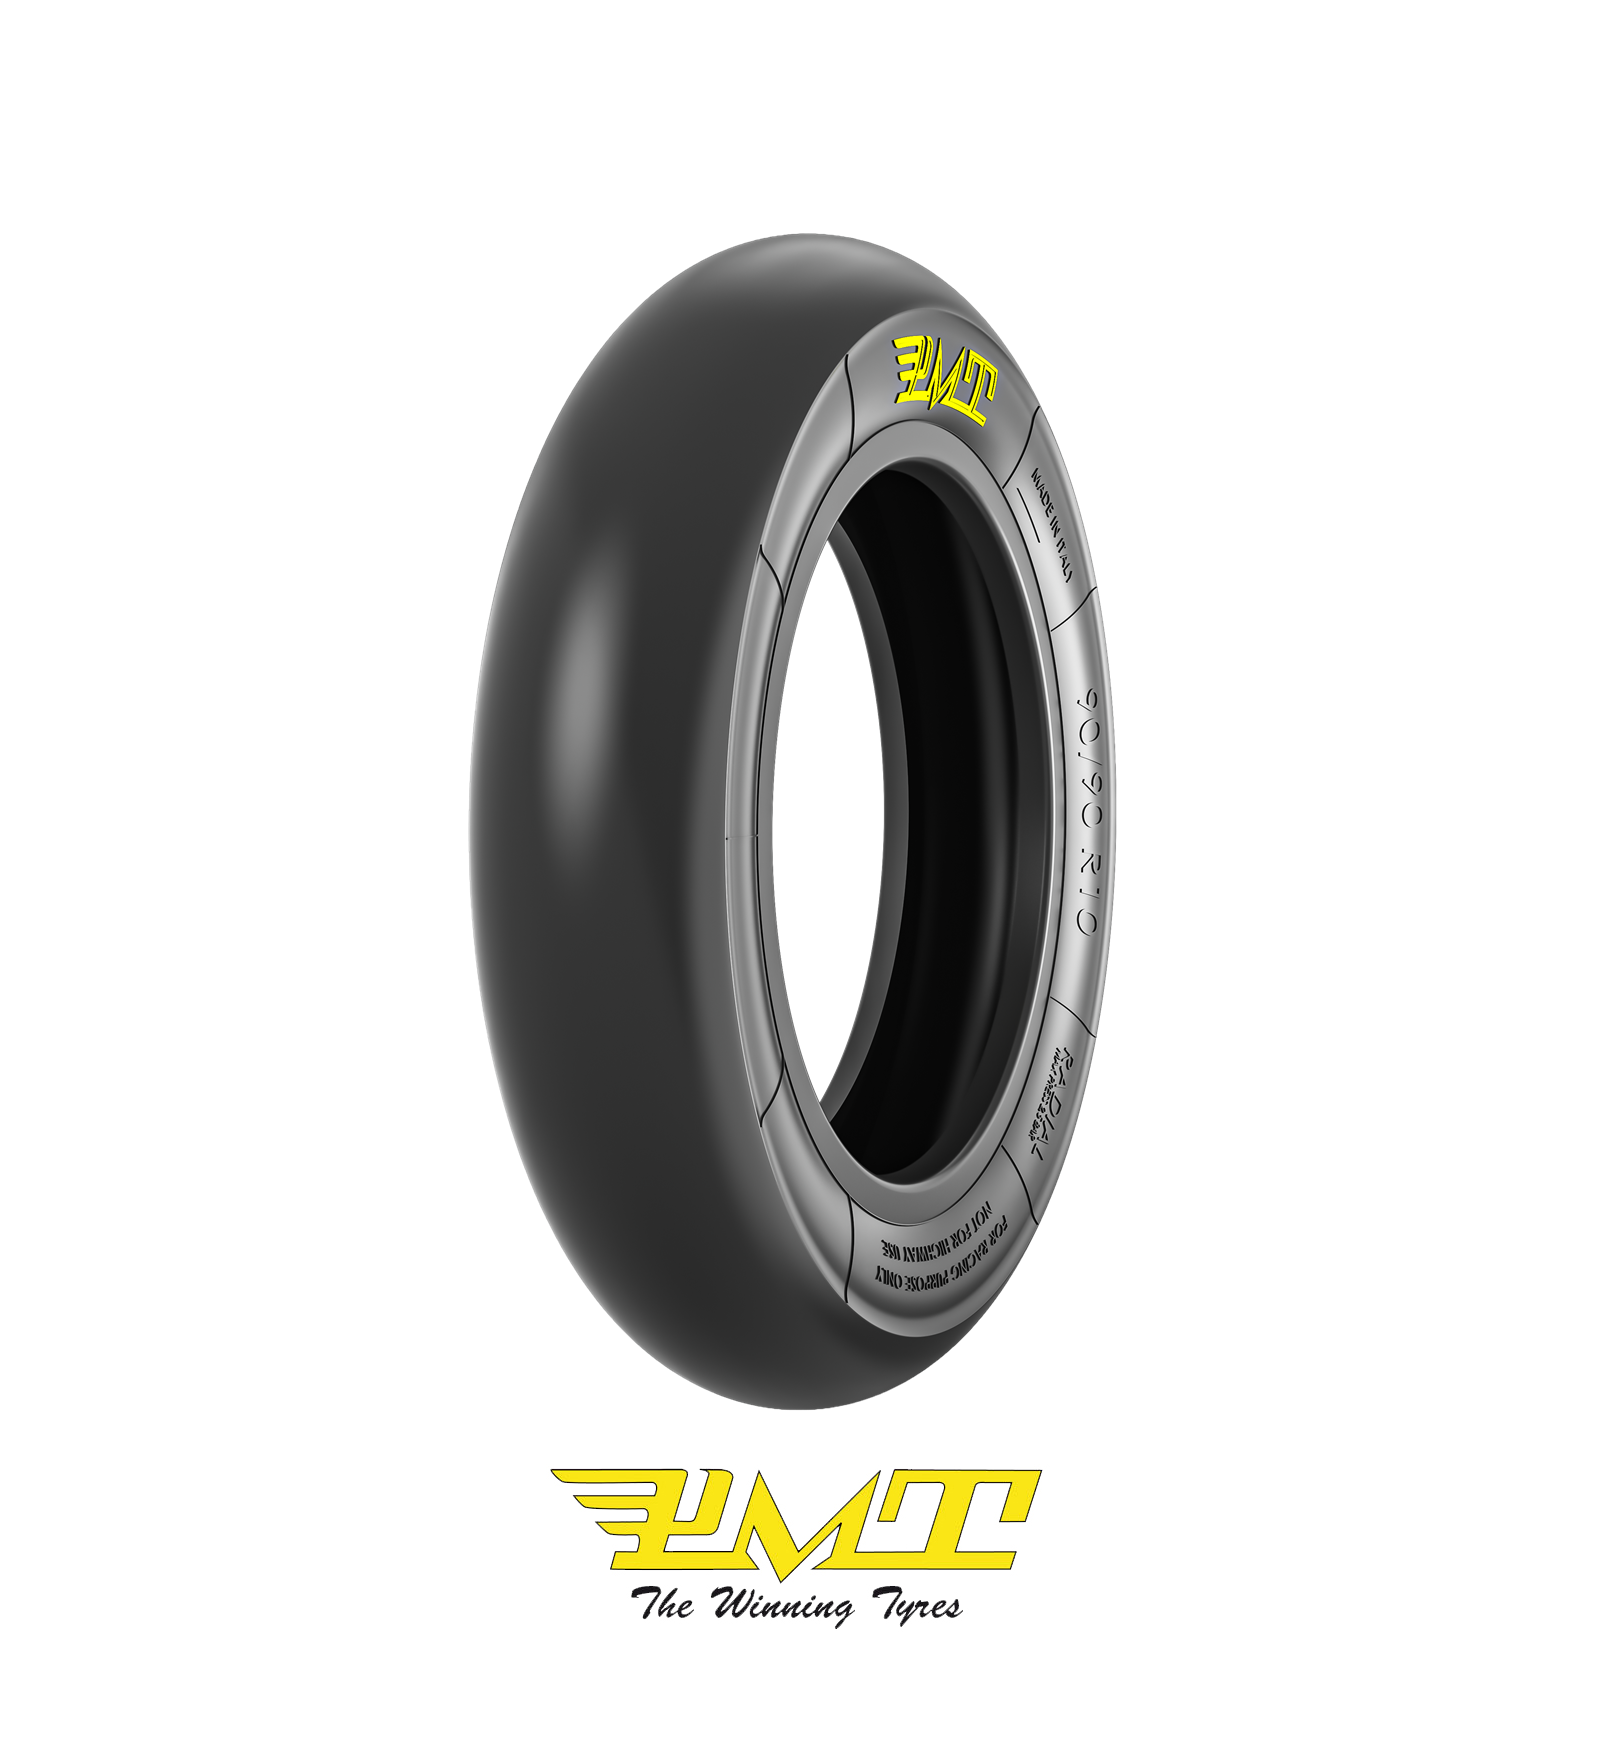 ms10014-m00 pneumatico gomma pmt-tyres 90/90r 10 medio slick